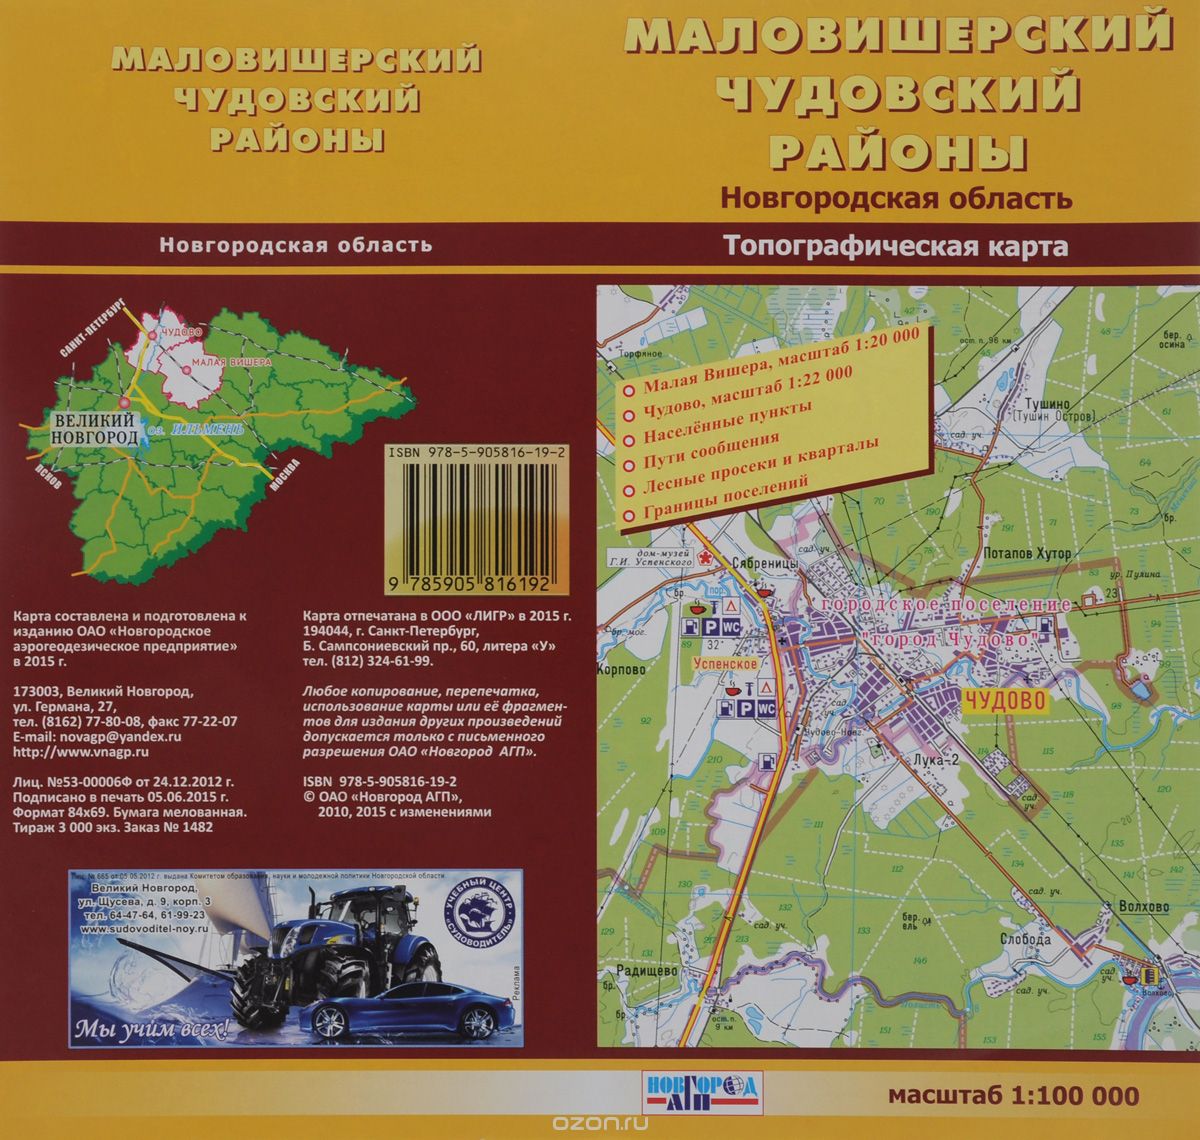 Маловишерский и Чудовский районы. Новгородская область. Топографическая карта